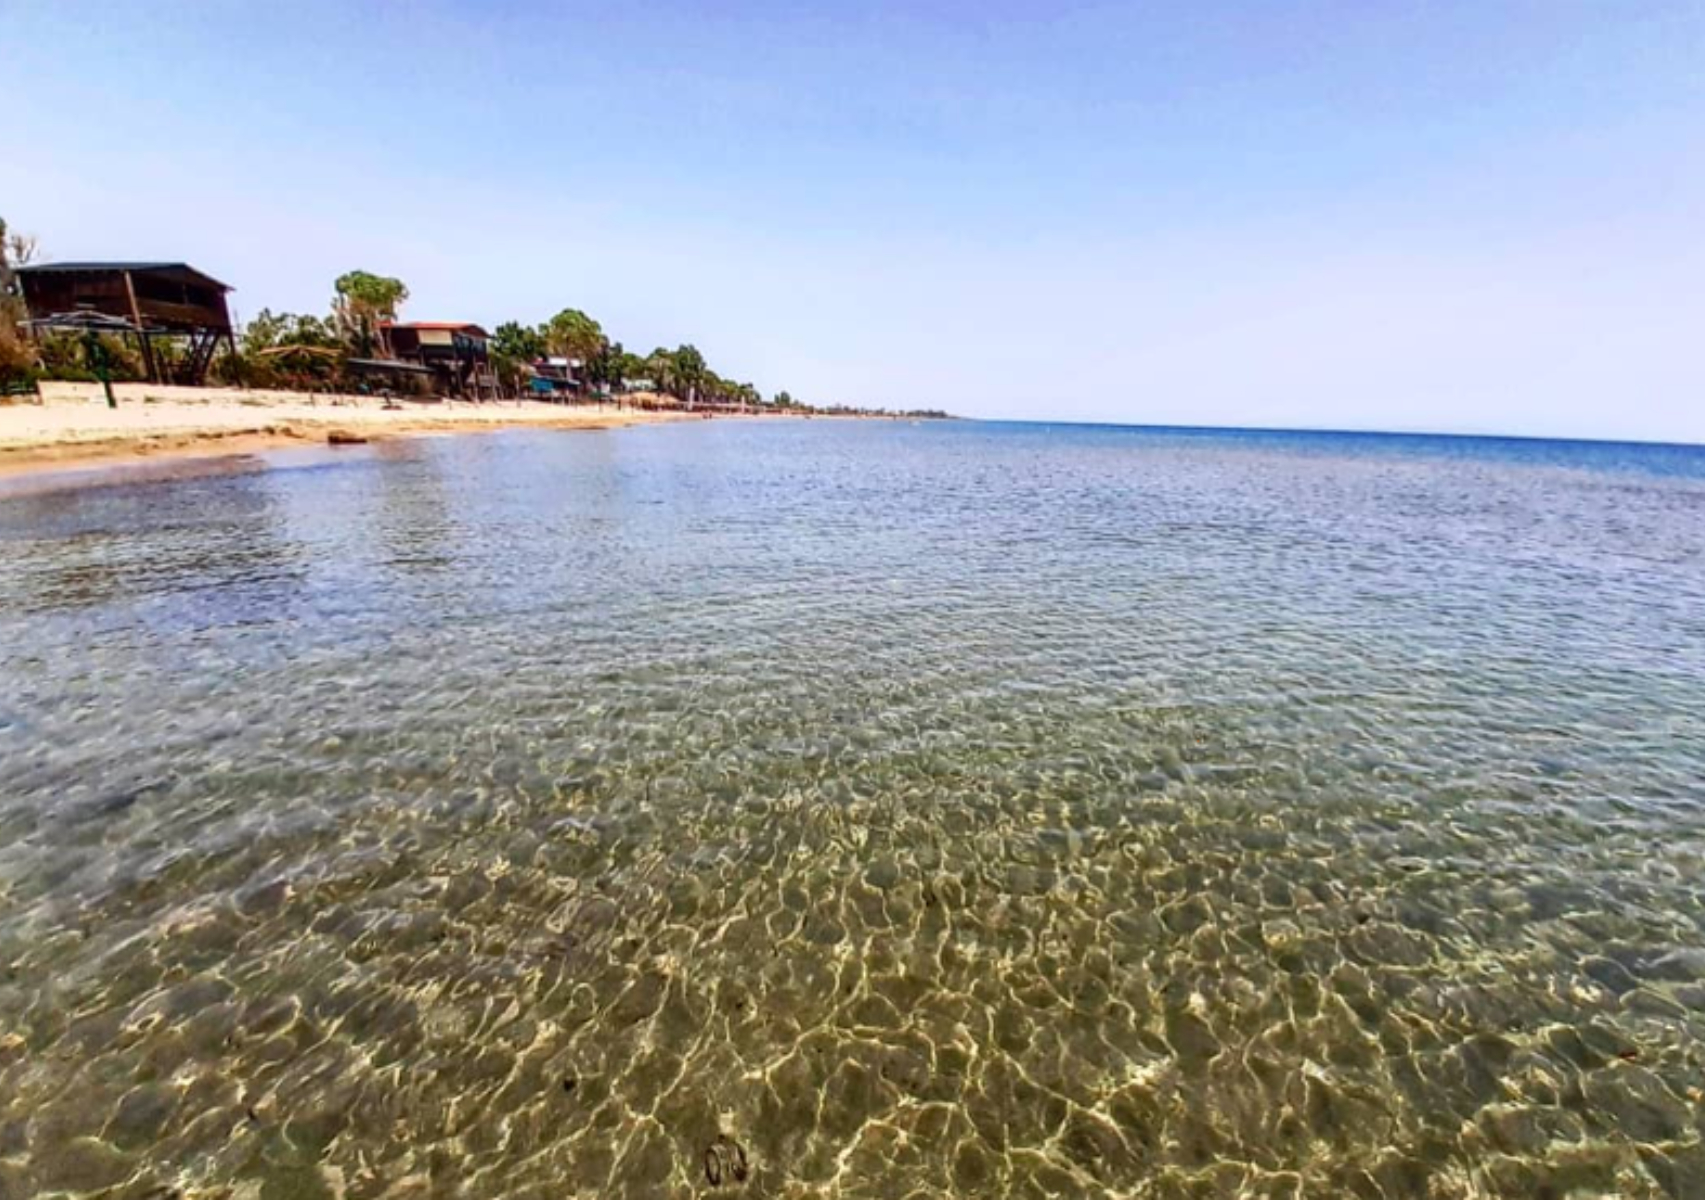 Λούρος: Η μεγαλύτερη αμμώδης παραλία στην Ελλάδα με τα κρυστάλλινα νερά 